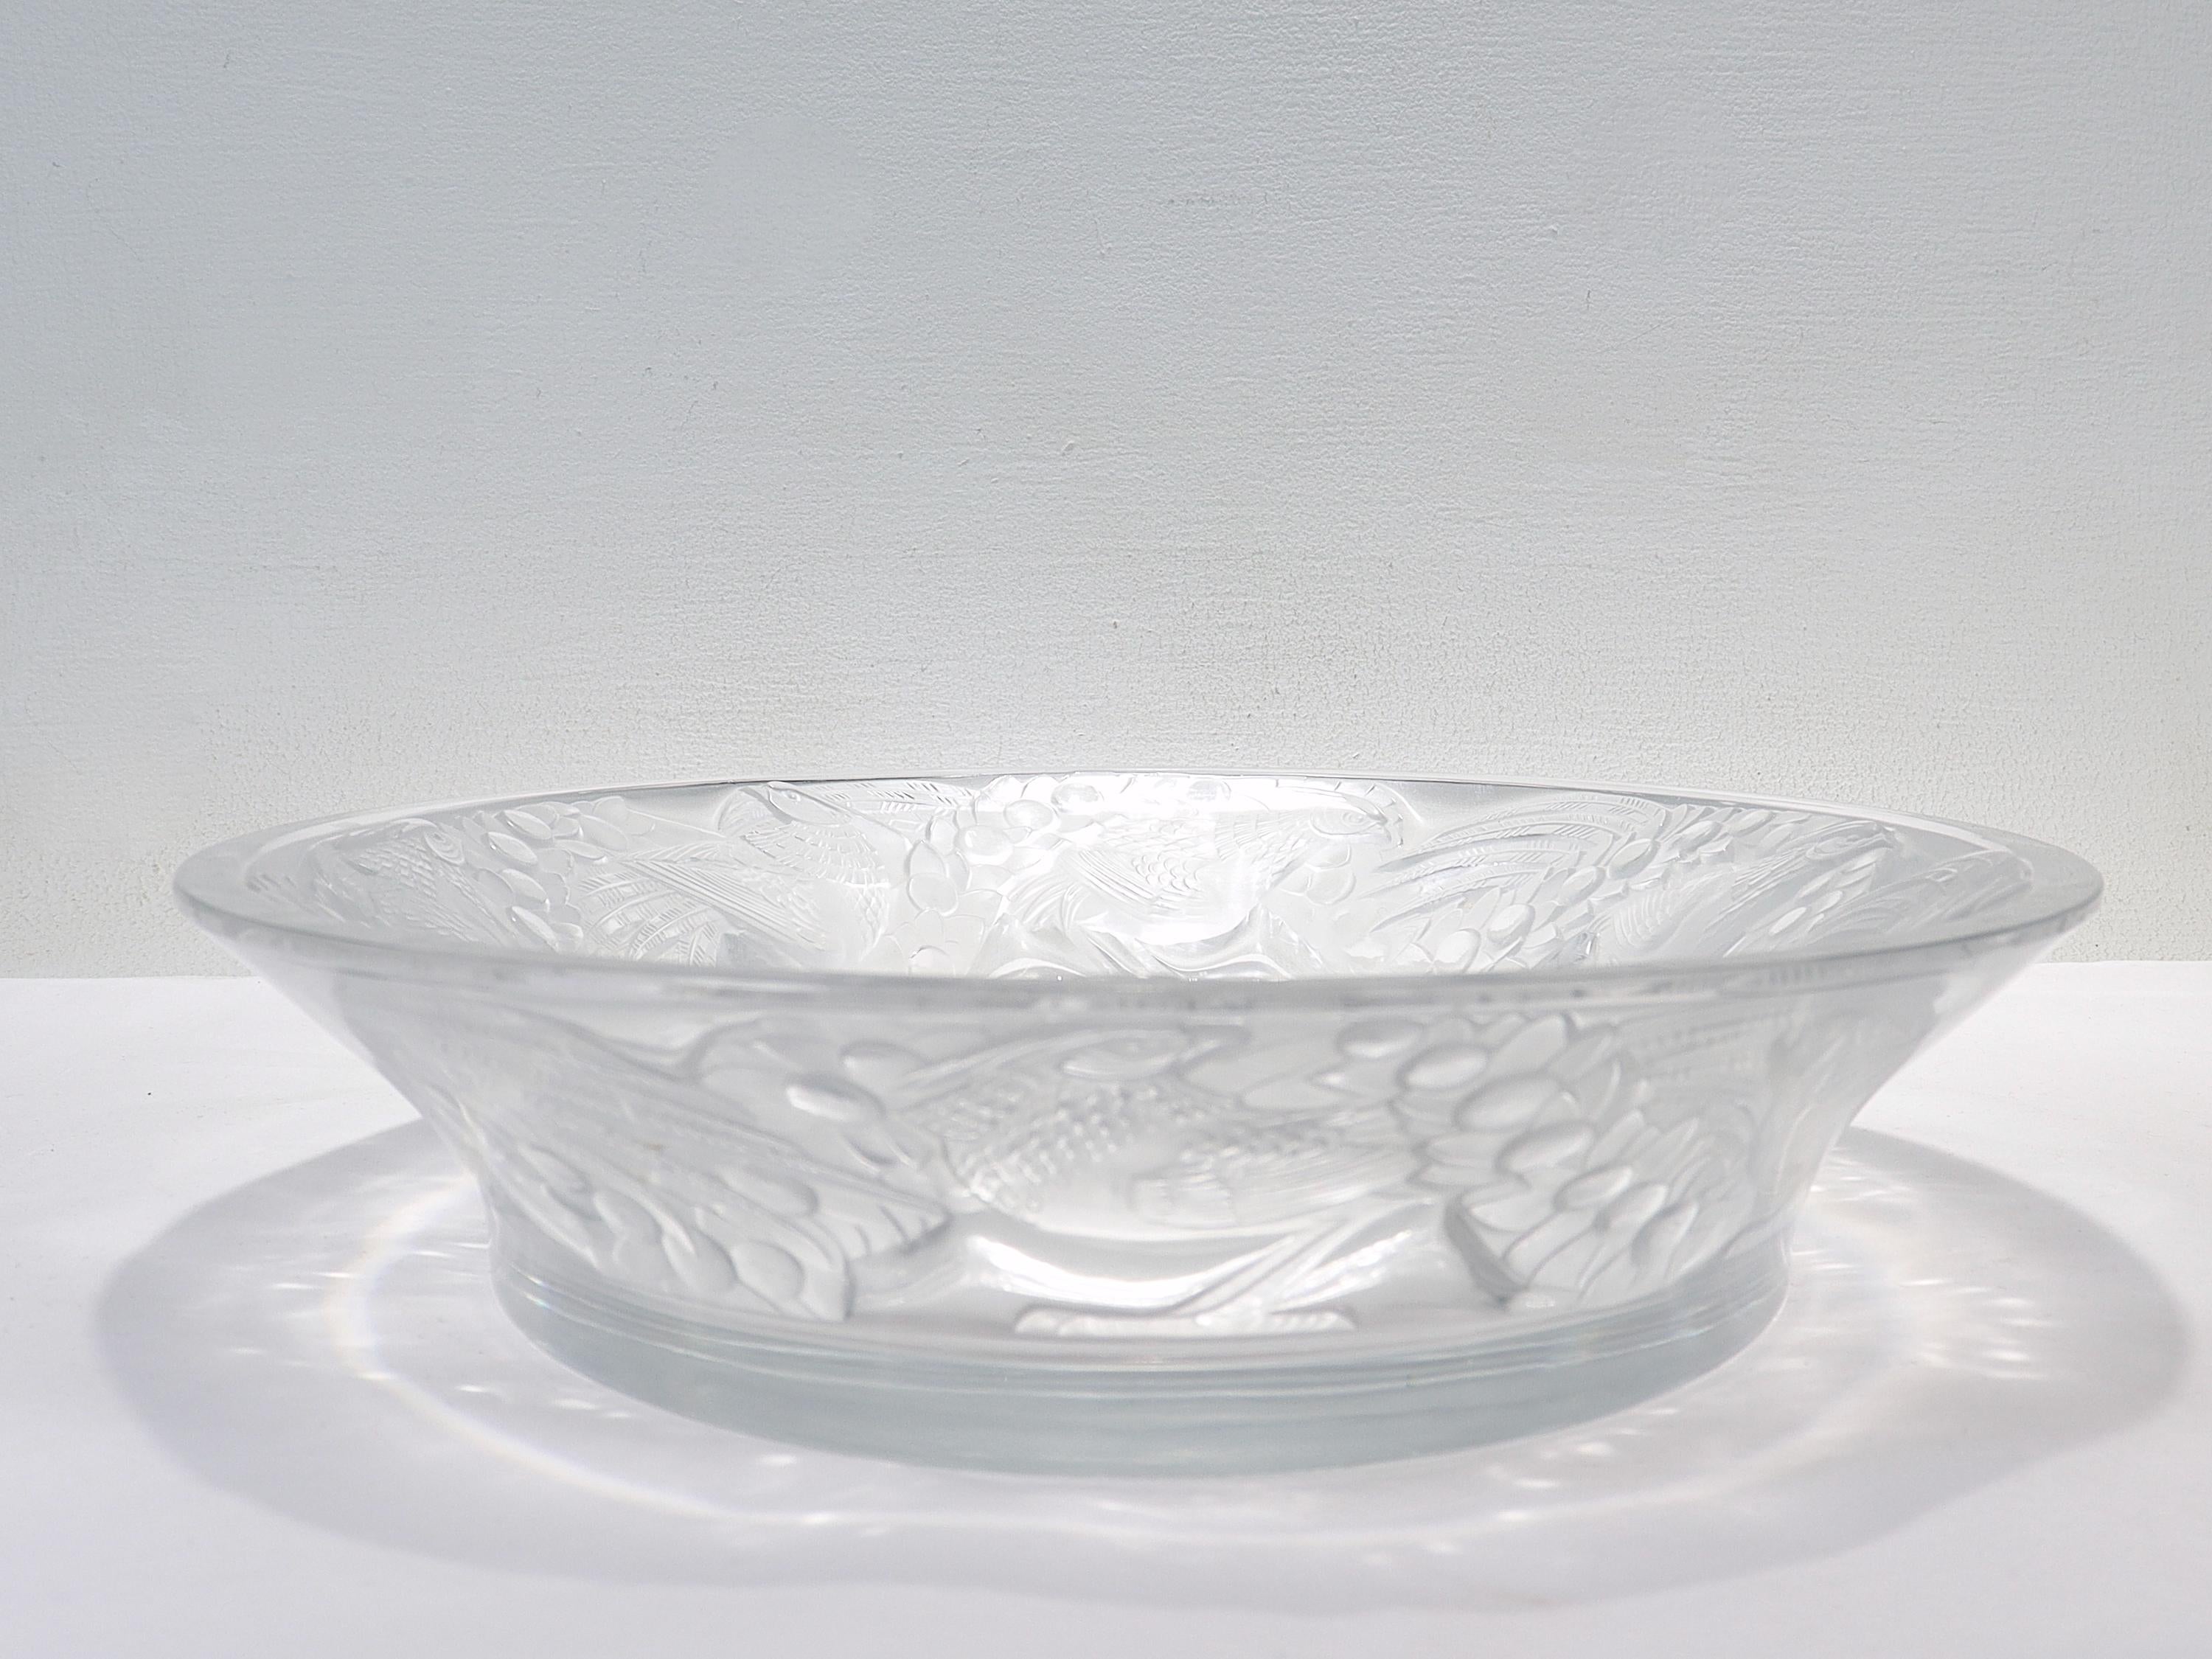 Antique Lalique Art Glass 'Faisans' Oval Bowl with Wide Rim Decor For Sale 2